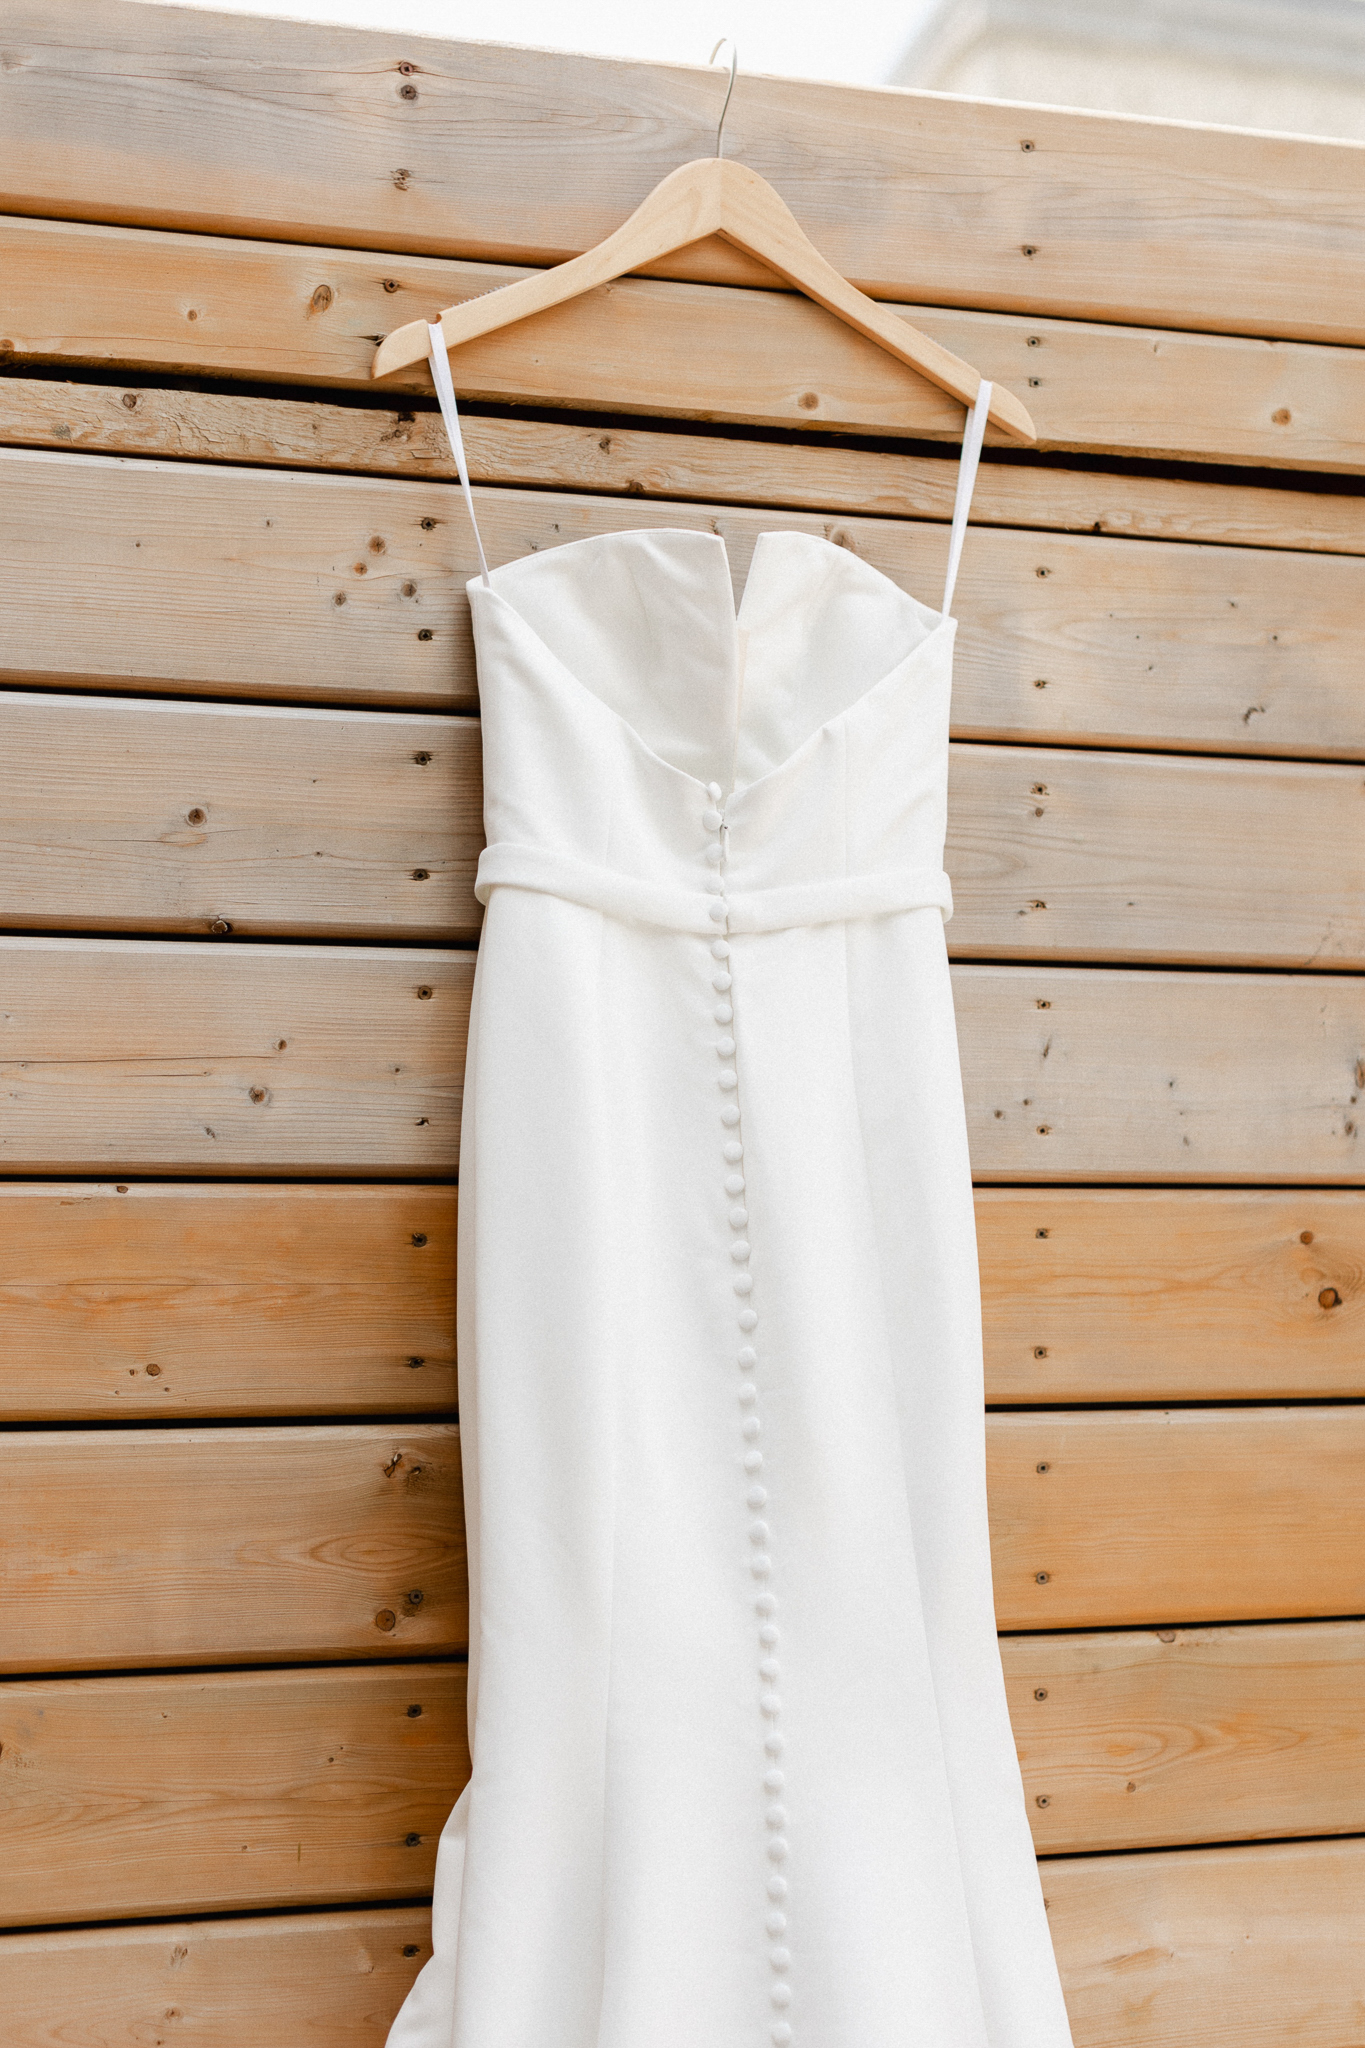 A wedding dress gracefully adorns a rustic wooden door, closeup.